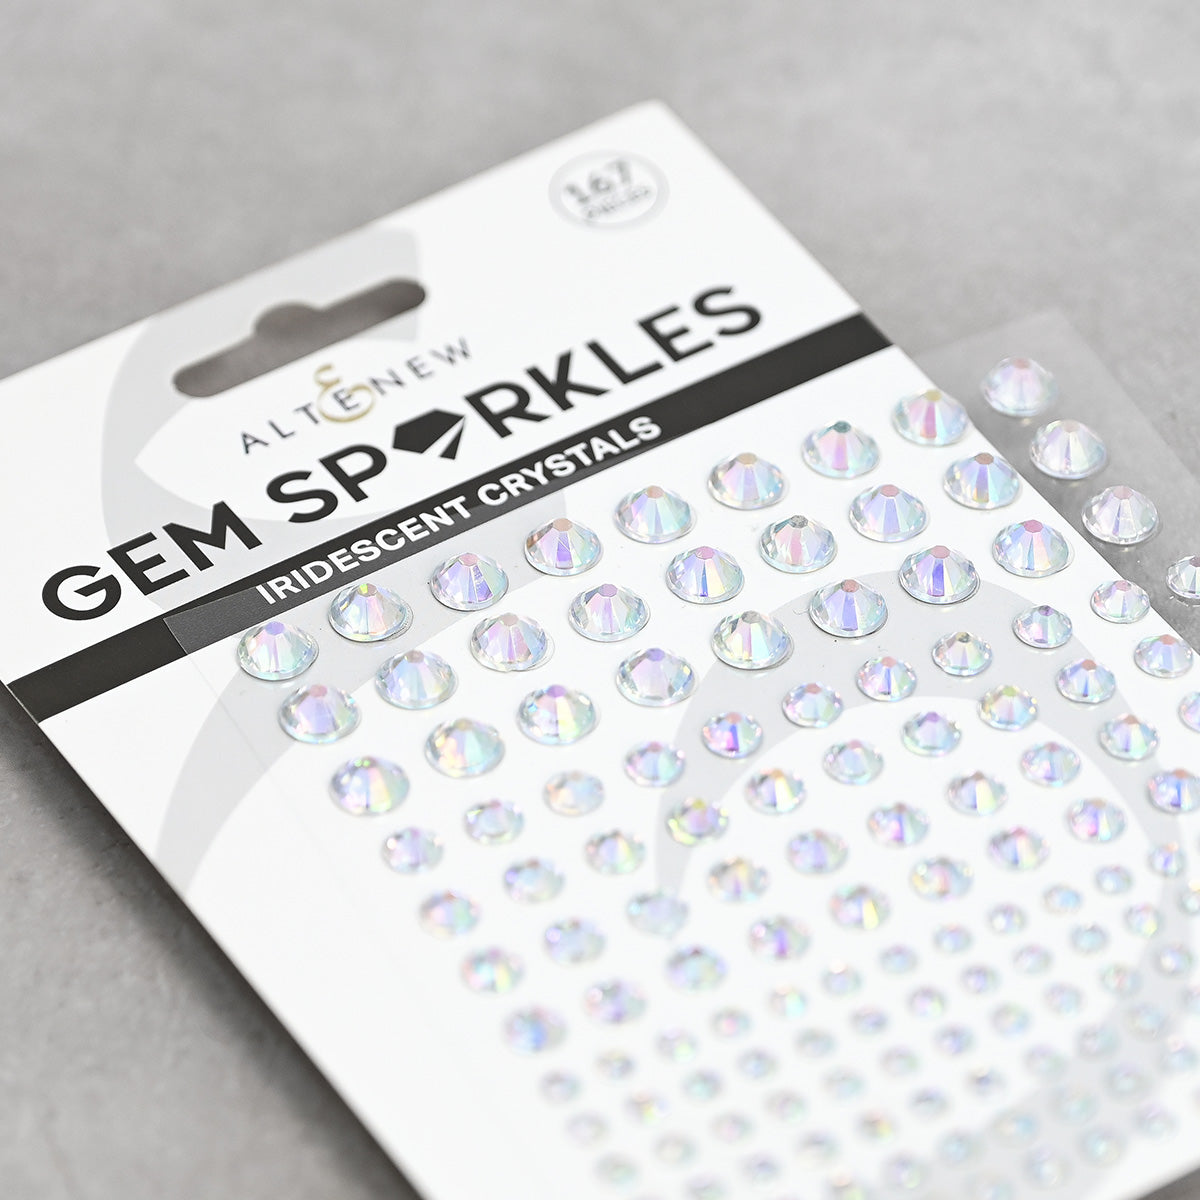 Embellishment Bundle Glimmer & Shine Gem Sparkles Bundle